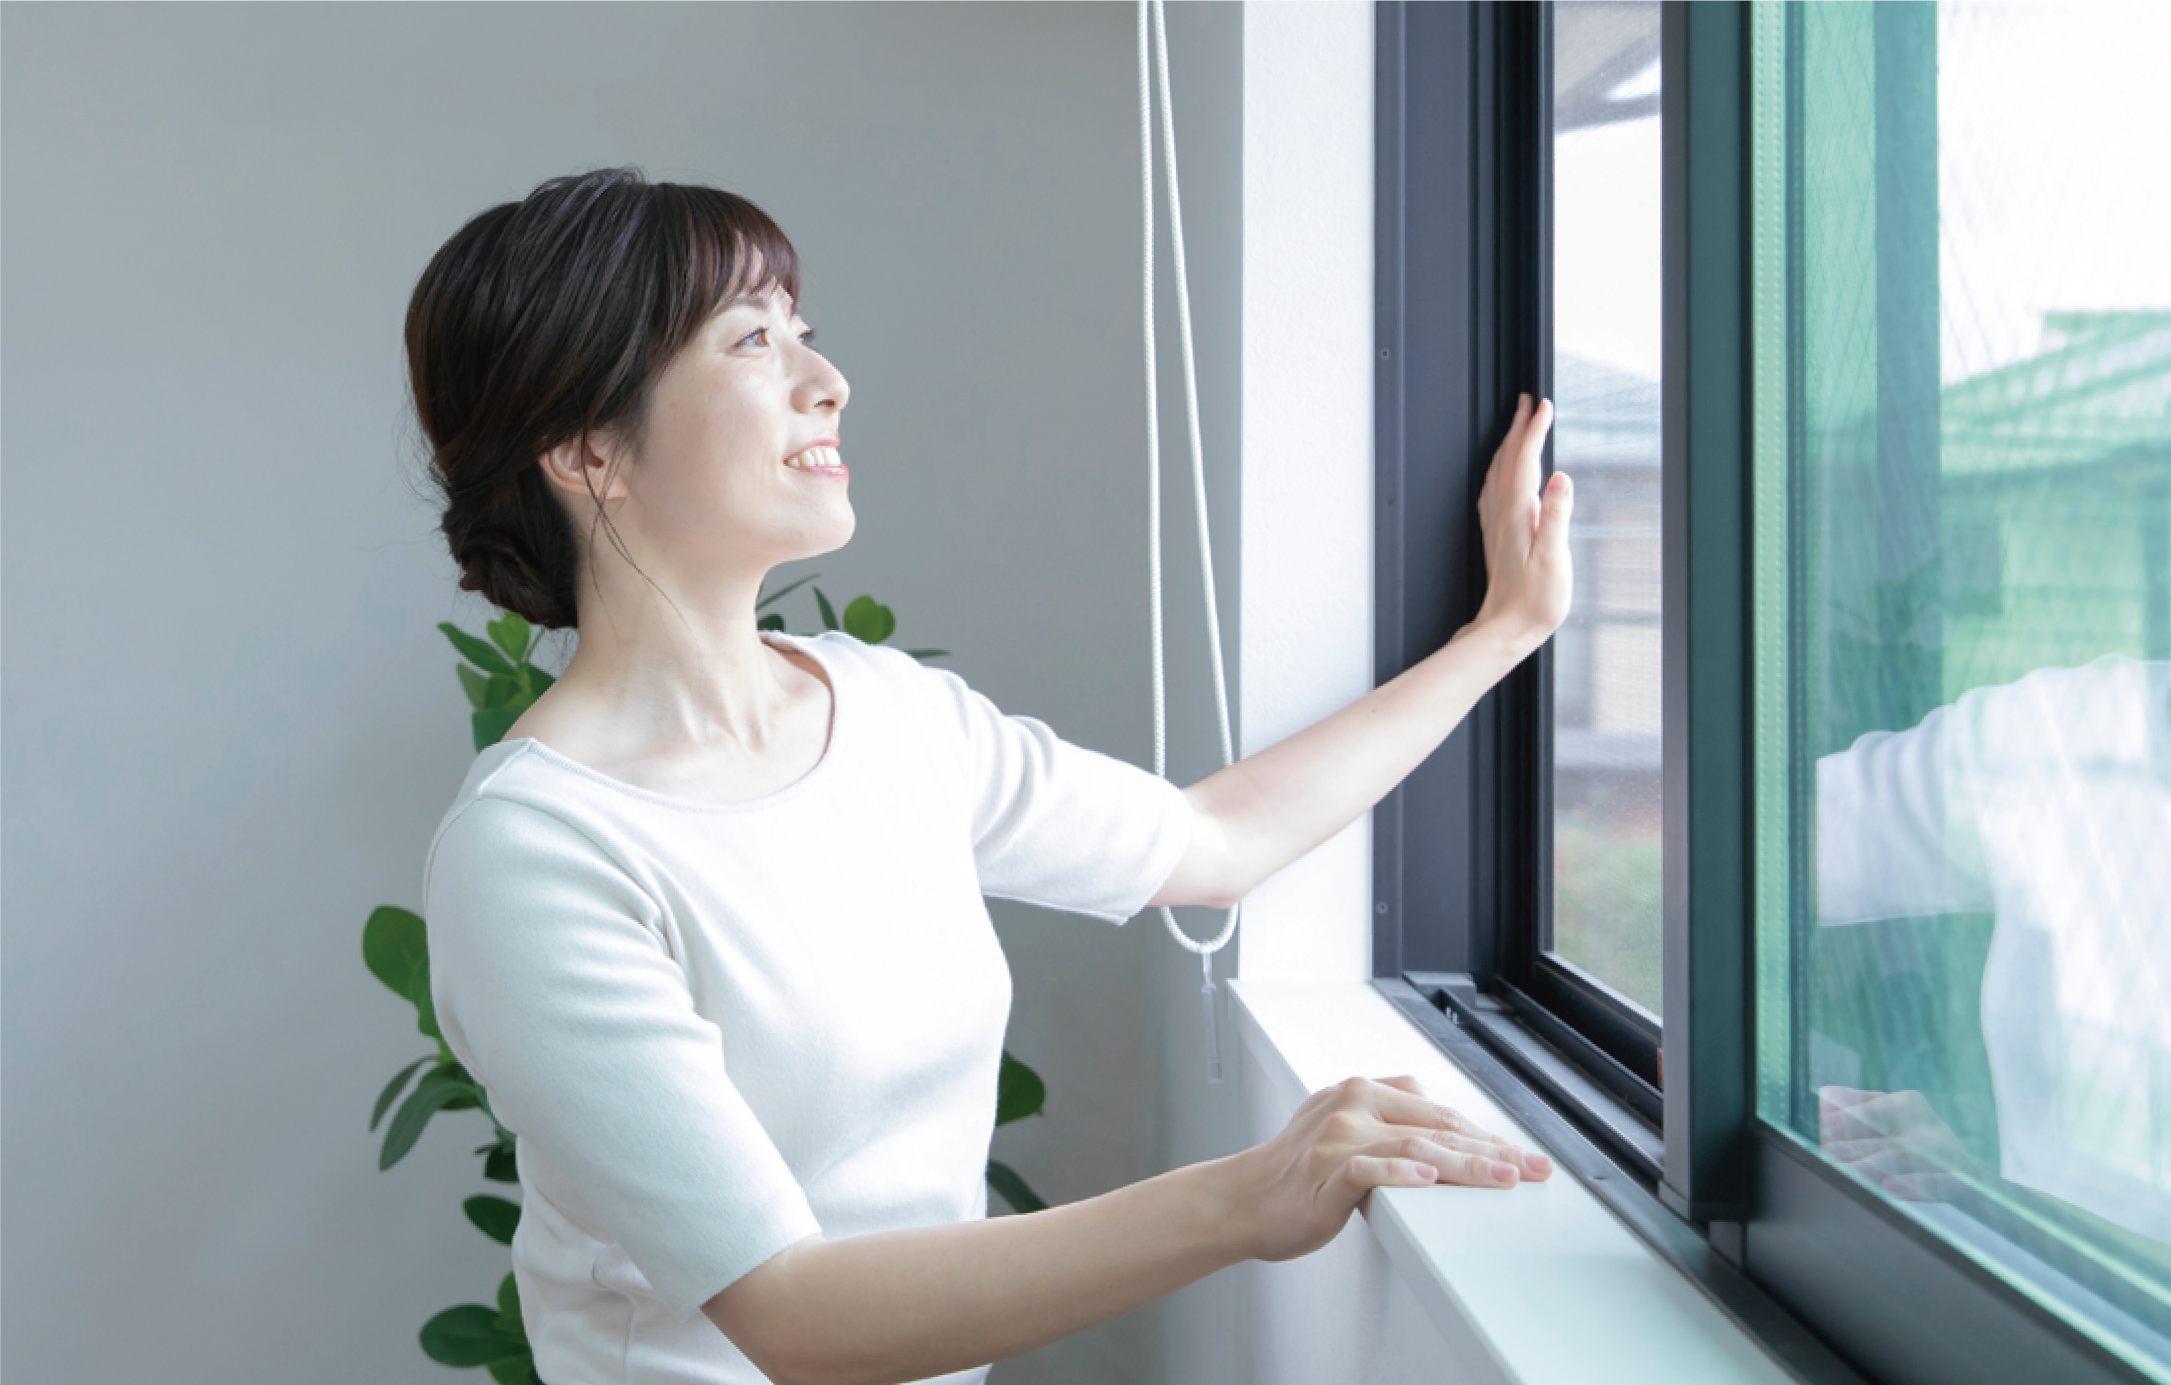 全館空調スマート・エアーズの冷暖房効果を保ちながら、全熱交換器が効率的に空気を入れ換え。真夏でも室内の涼しさを損なうことなく、お得に心地よく換気できます。